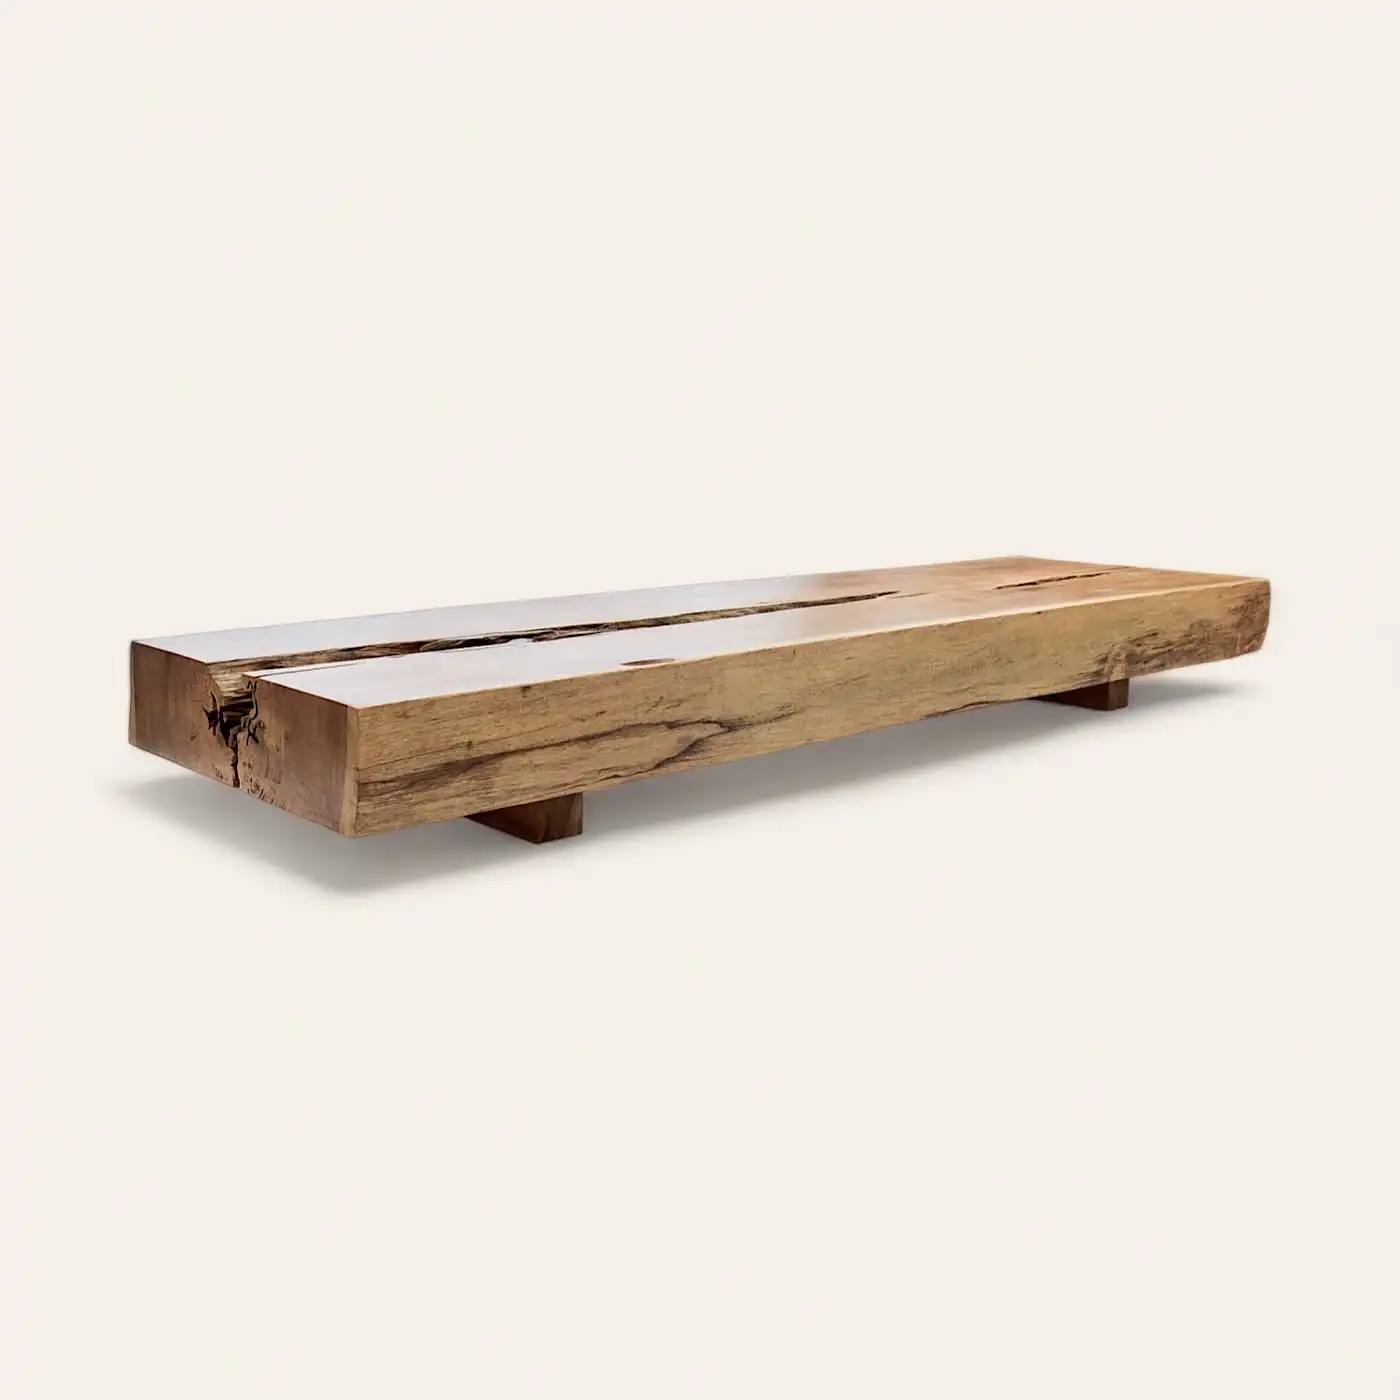  Un banc en bois rustique fabriqué à partir d'une seule pièce de bois. 